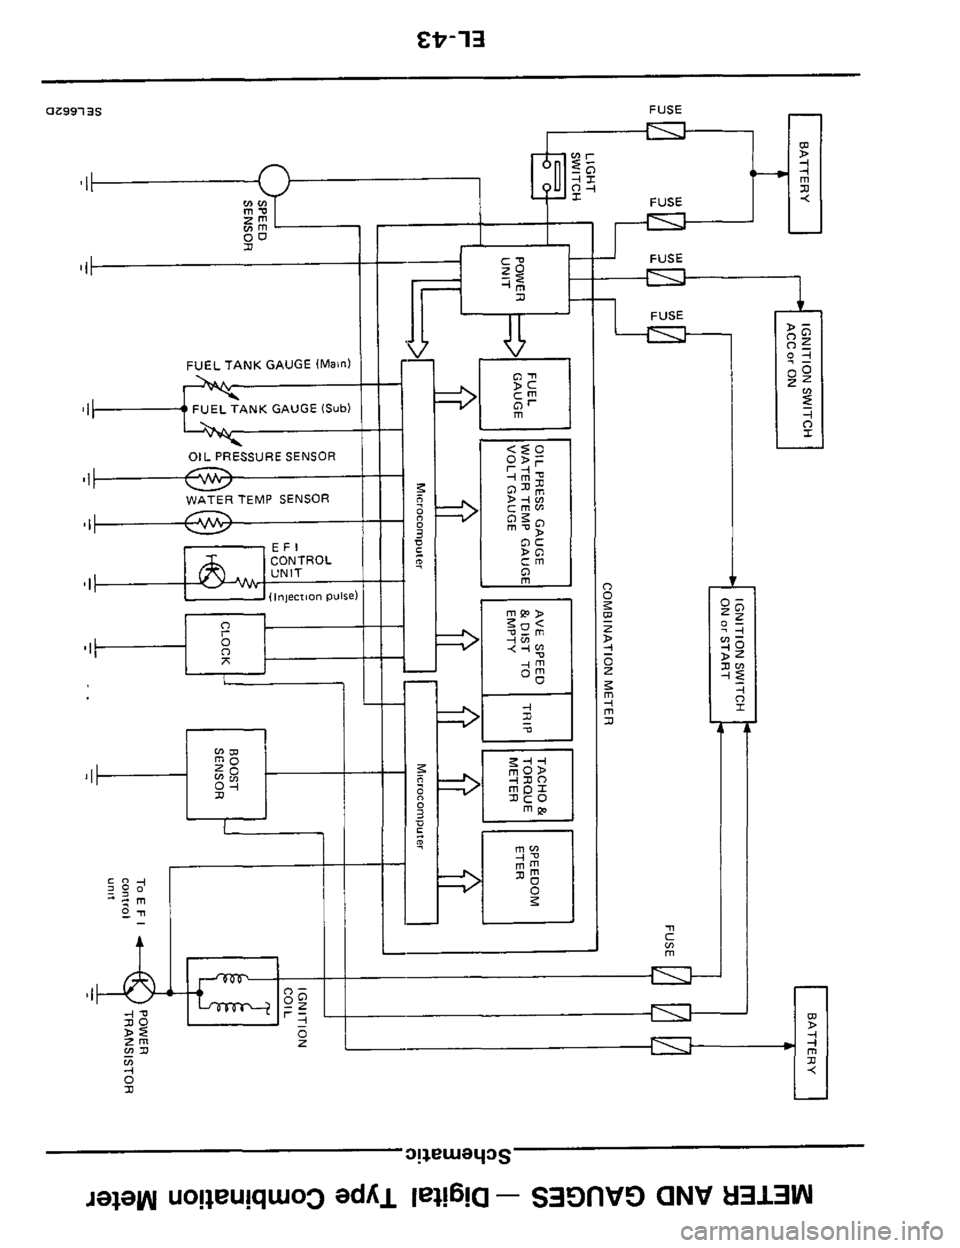 NISSAN 300ZX 1984 Z31 Electrical System Workshop Manual FUEL TANK  GAUGE (Main1 
I 
SI 
01 
74 
I -0 I 
A FUSE 
__Izt___l  